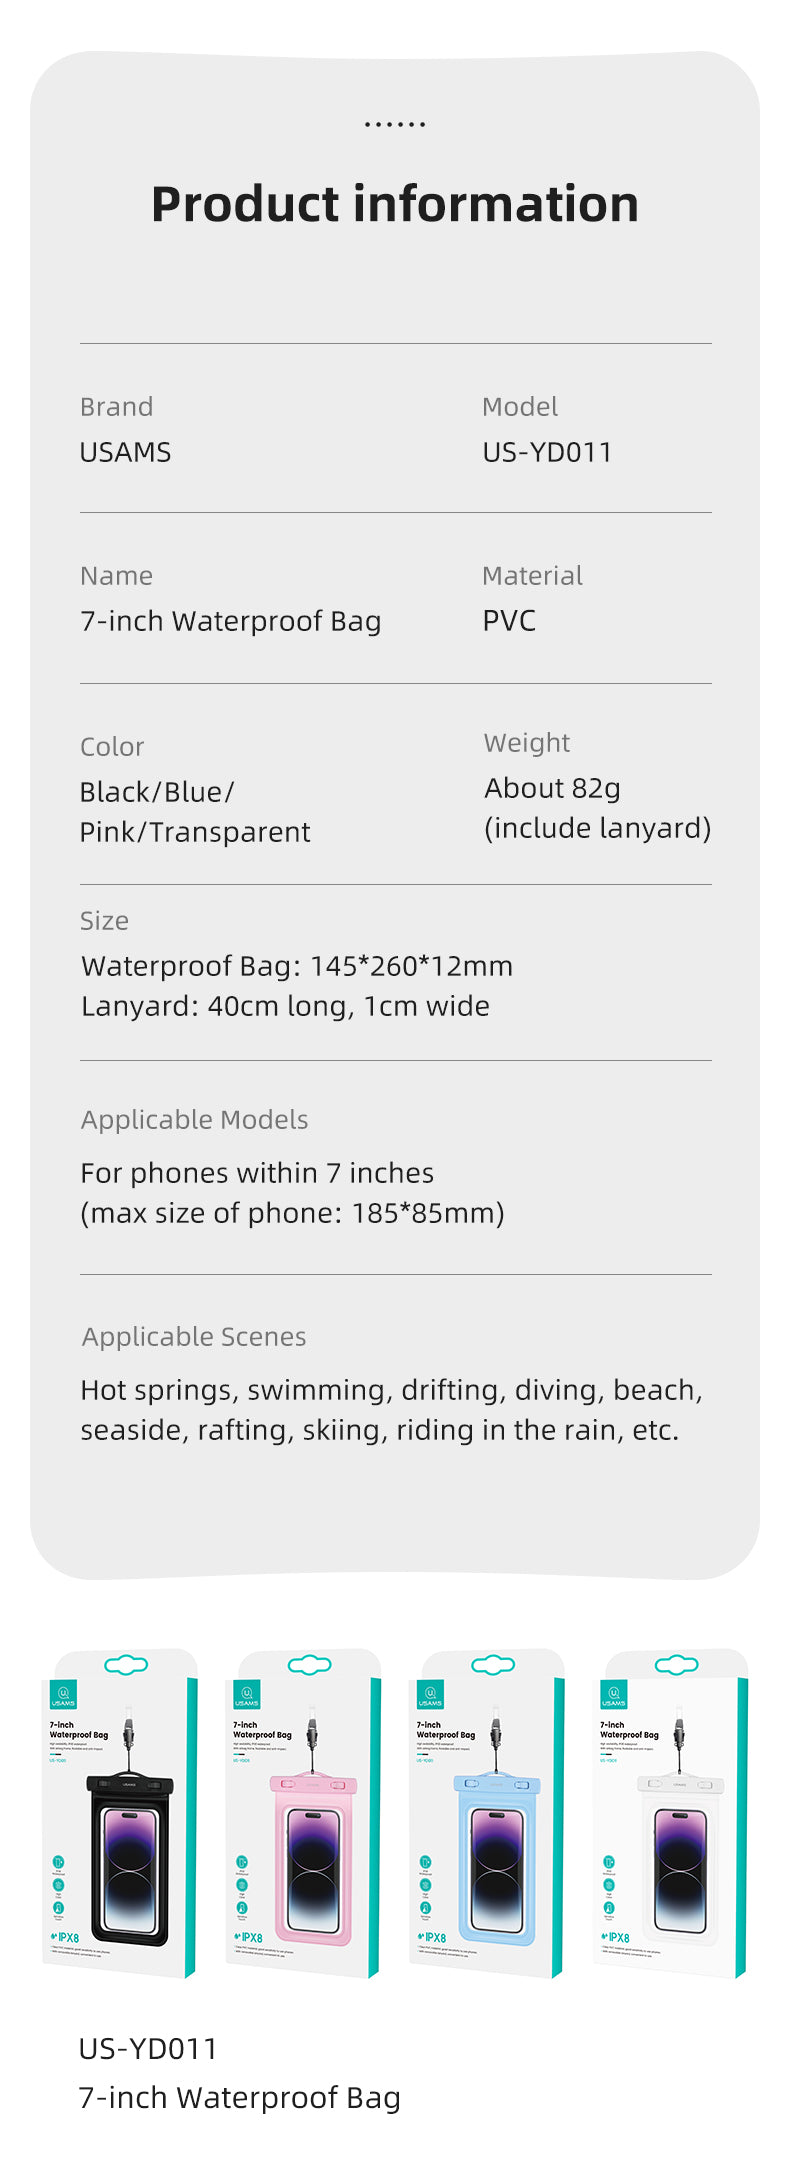 7-inch Waterproof Bag